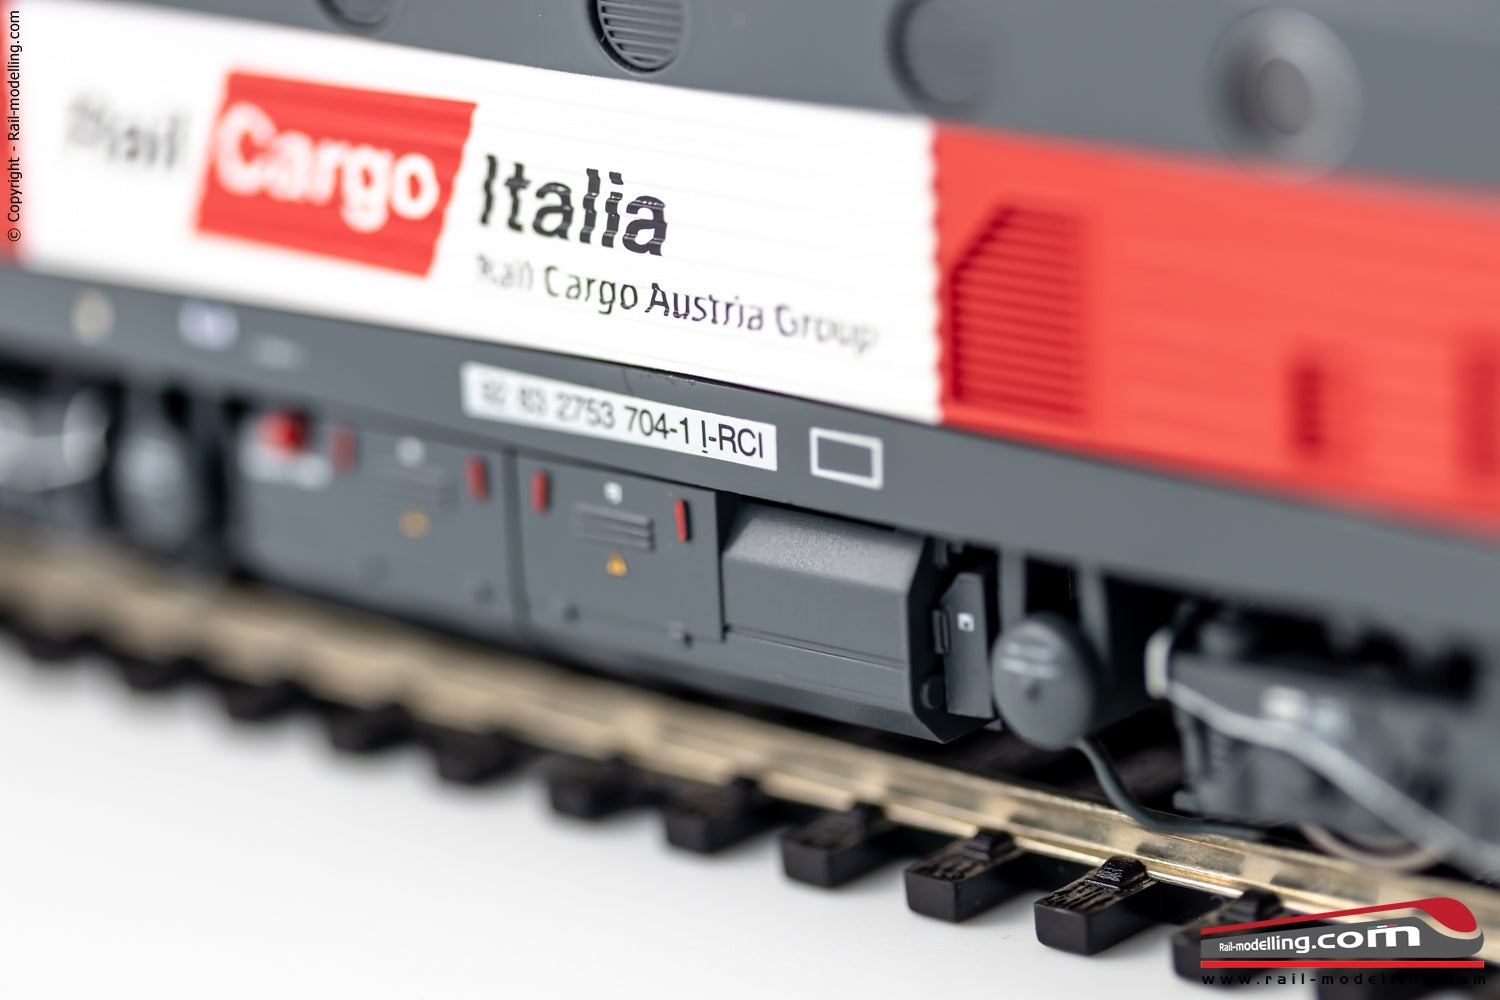 RIVAROSSI HR2863 - H0 187 - Locomotiva diesel Rail Cargo Italia D.753.704 Ep. VI